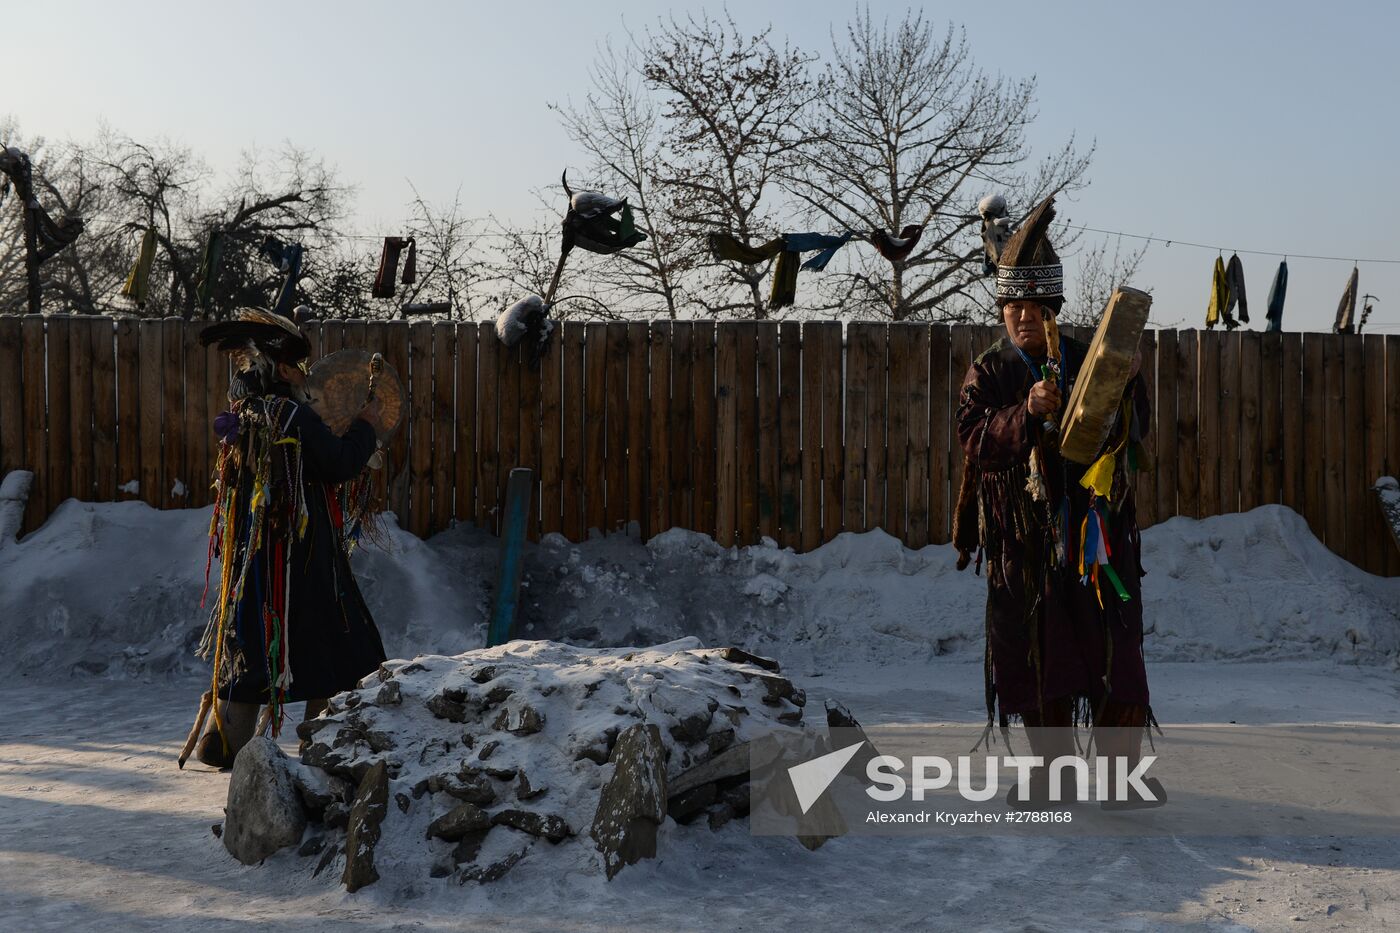 Shaman communities in Tyva